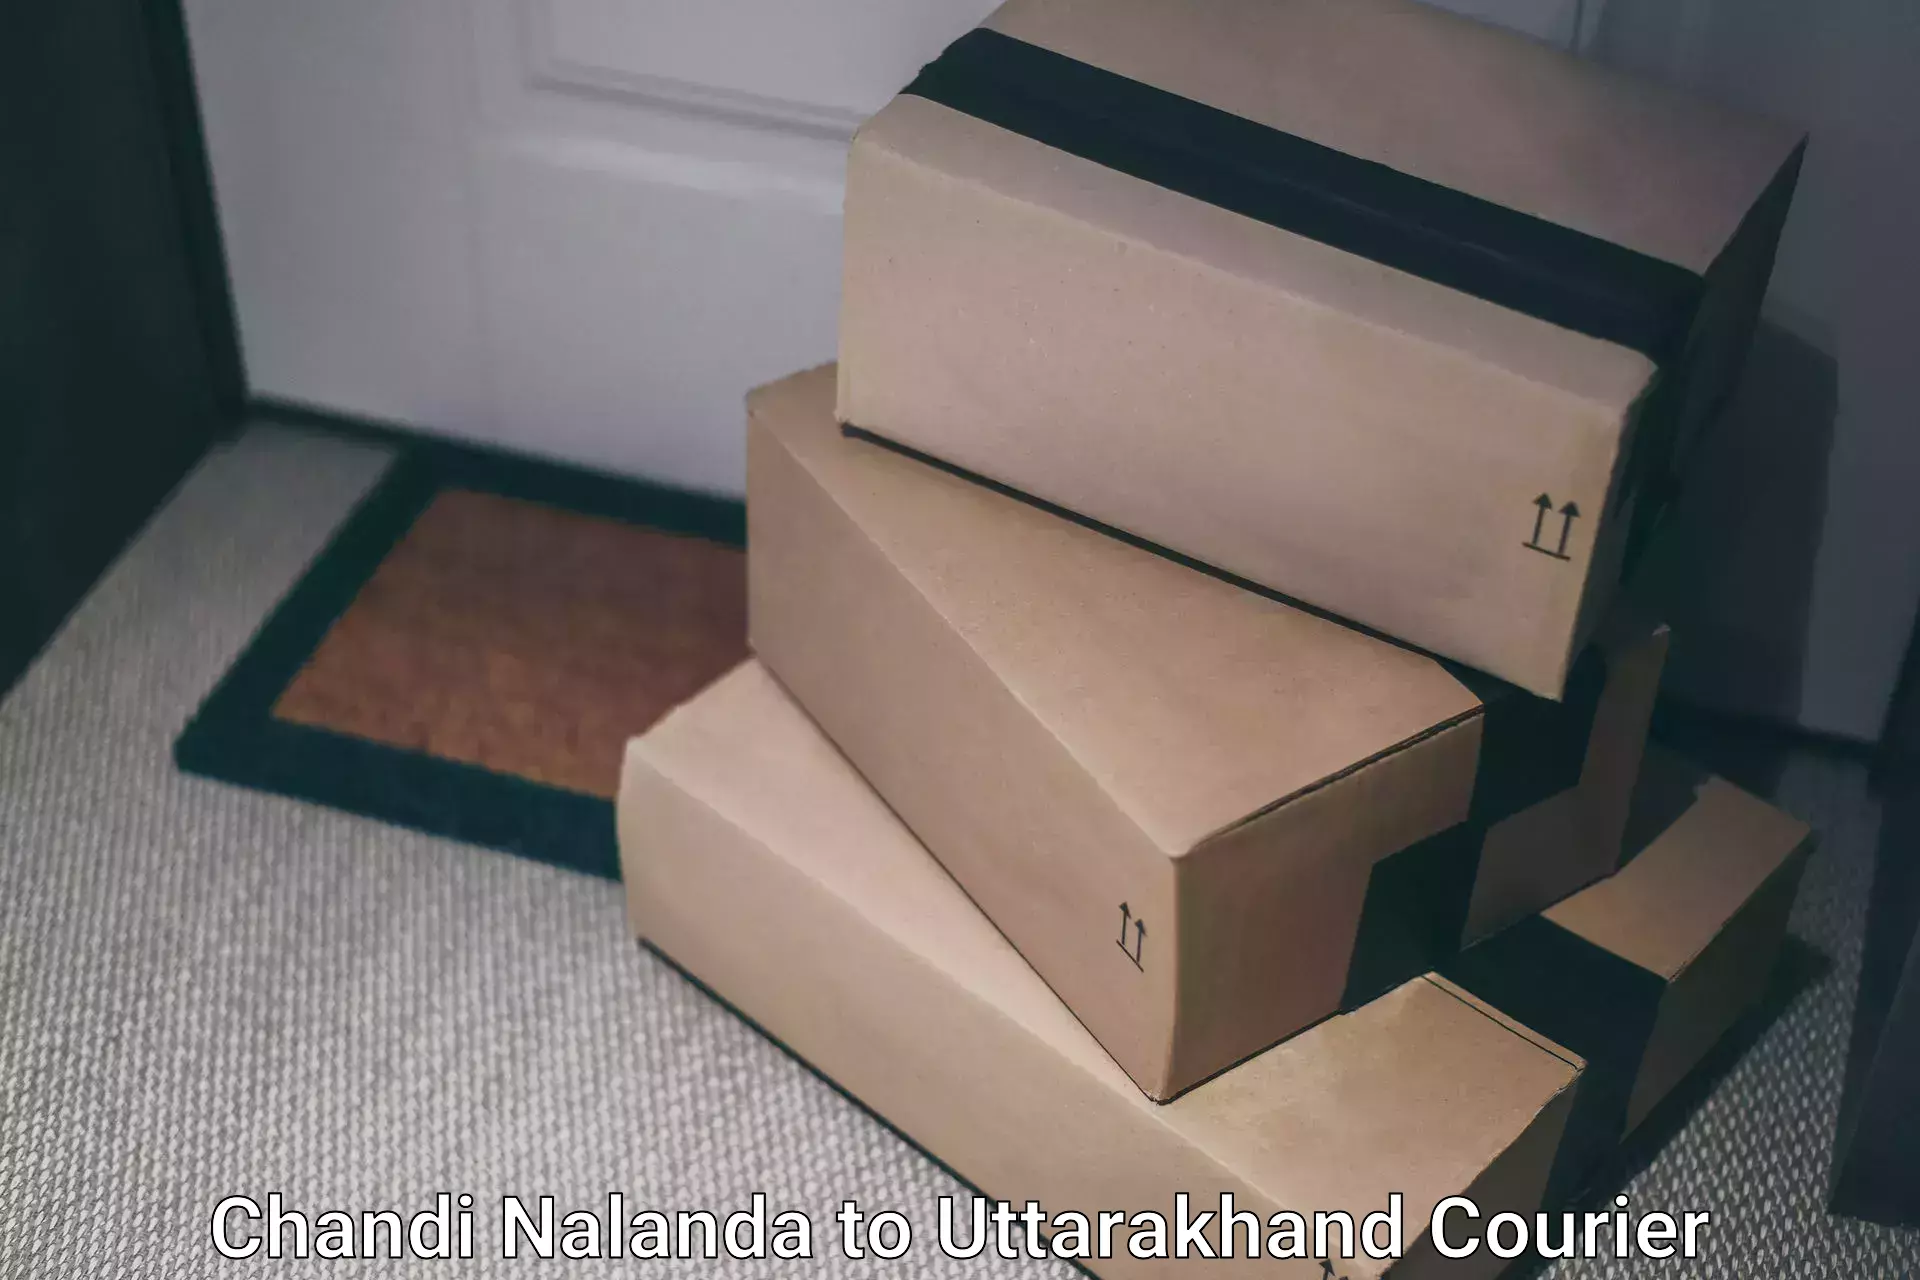 Express delivery network Chandi Nalanda to Paithani